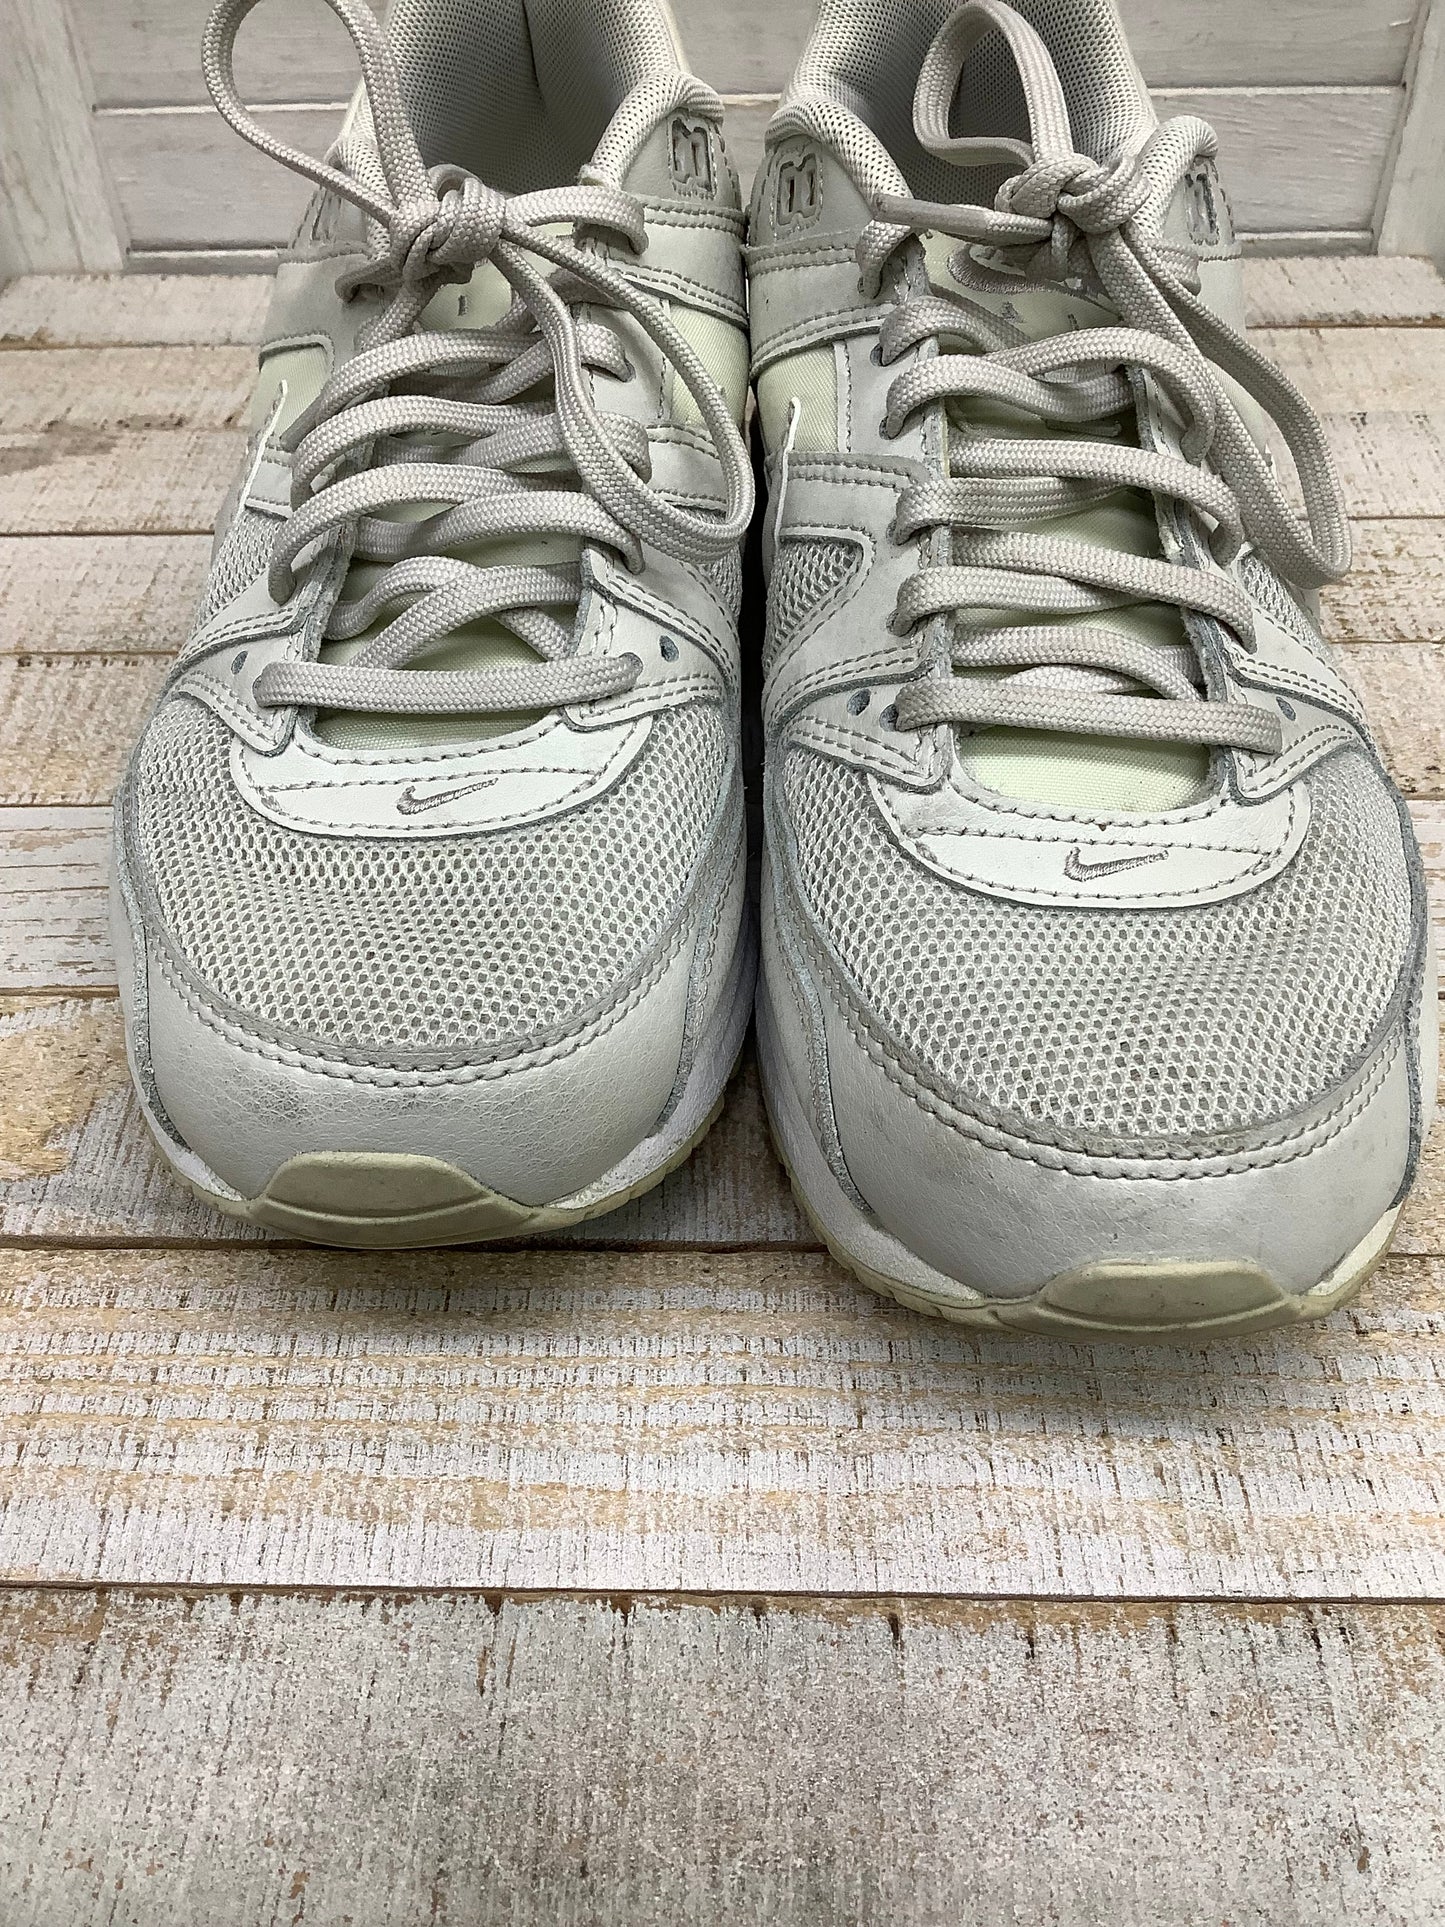 White Shoes Athletic Nike, Size 8.5